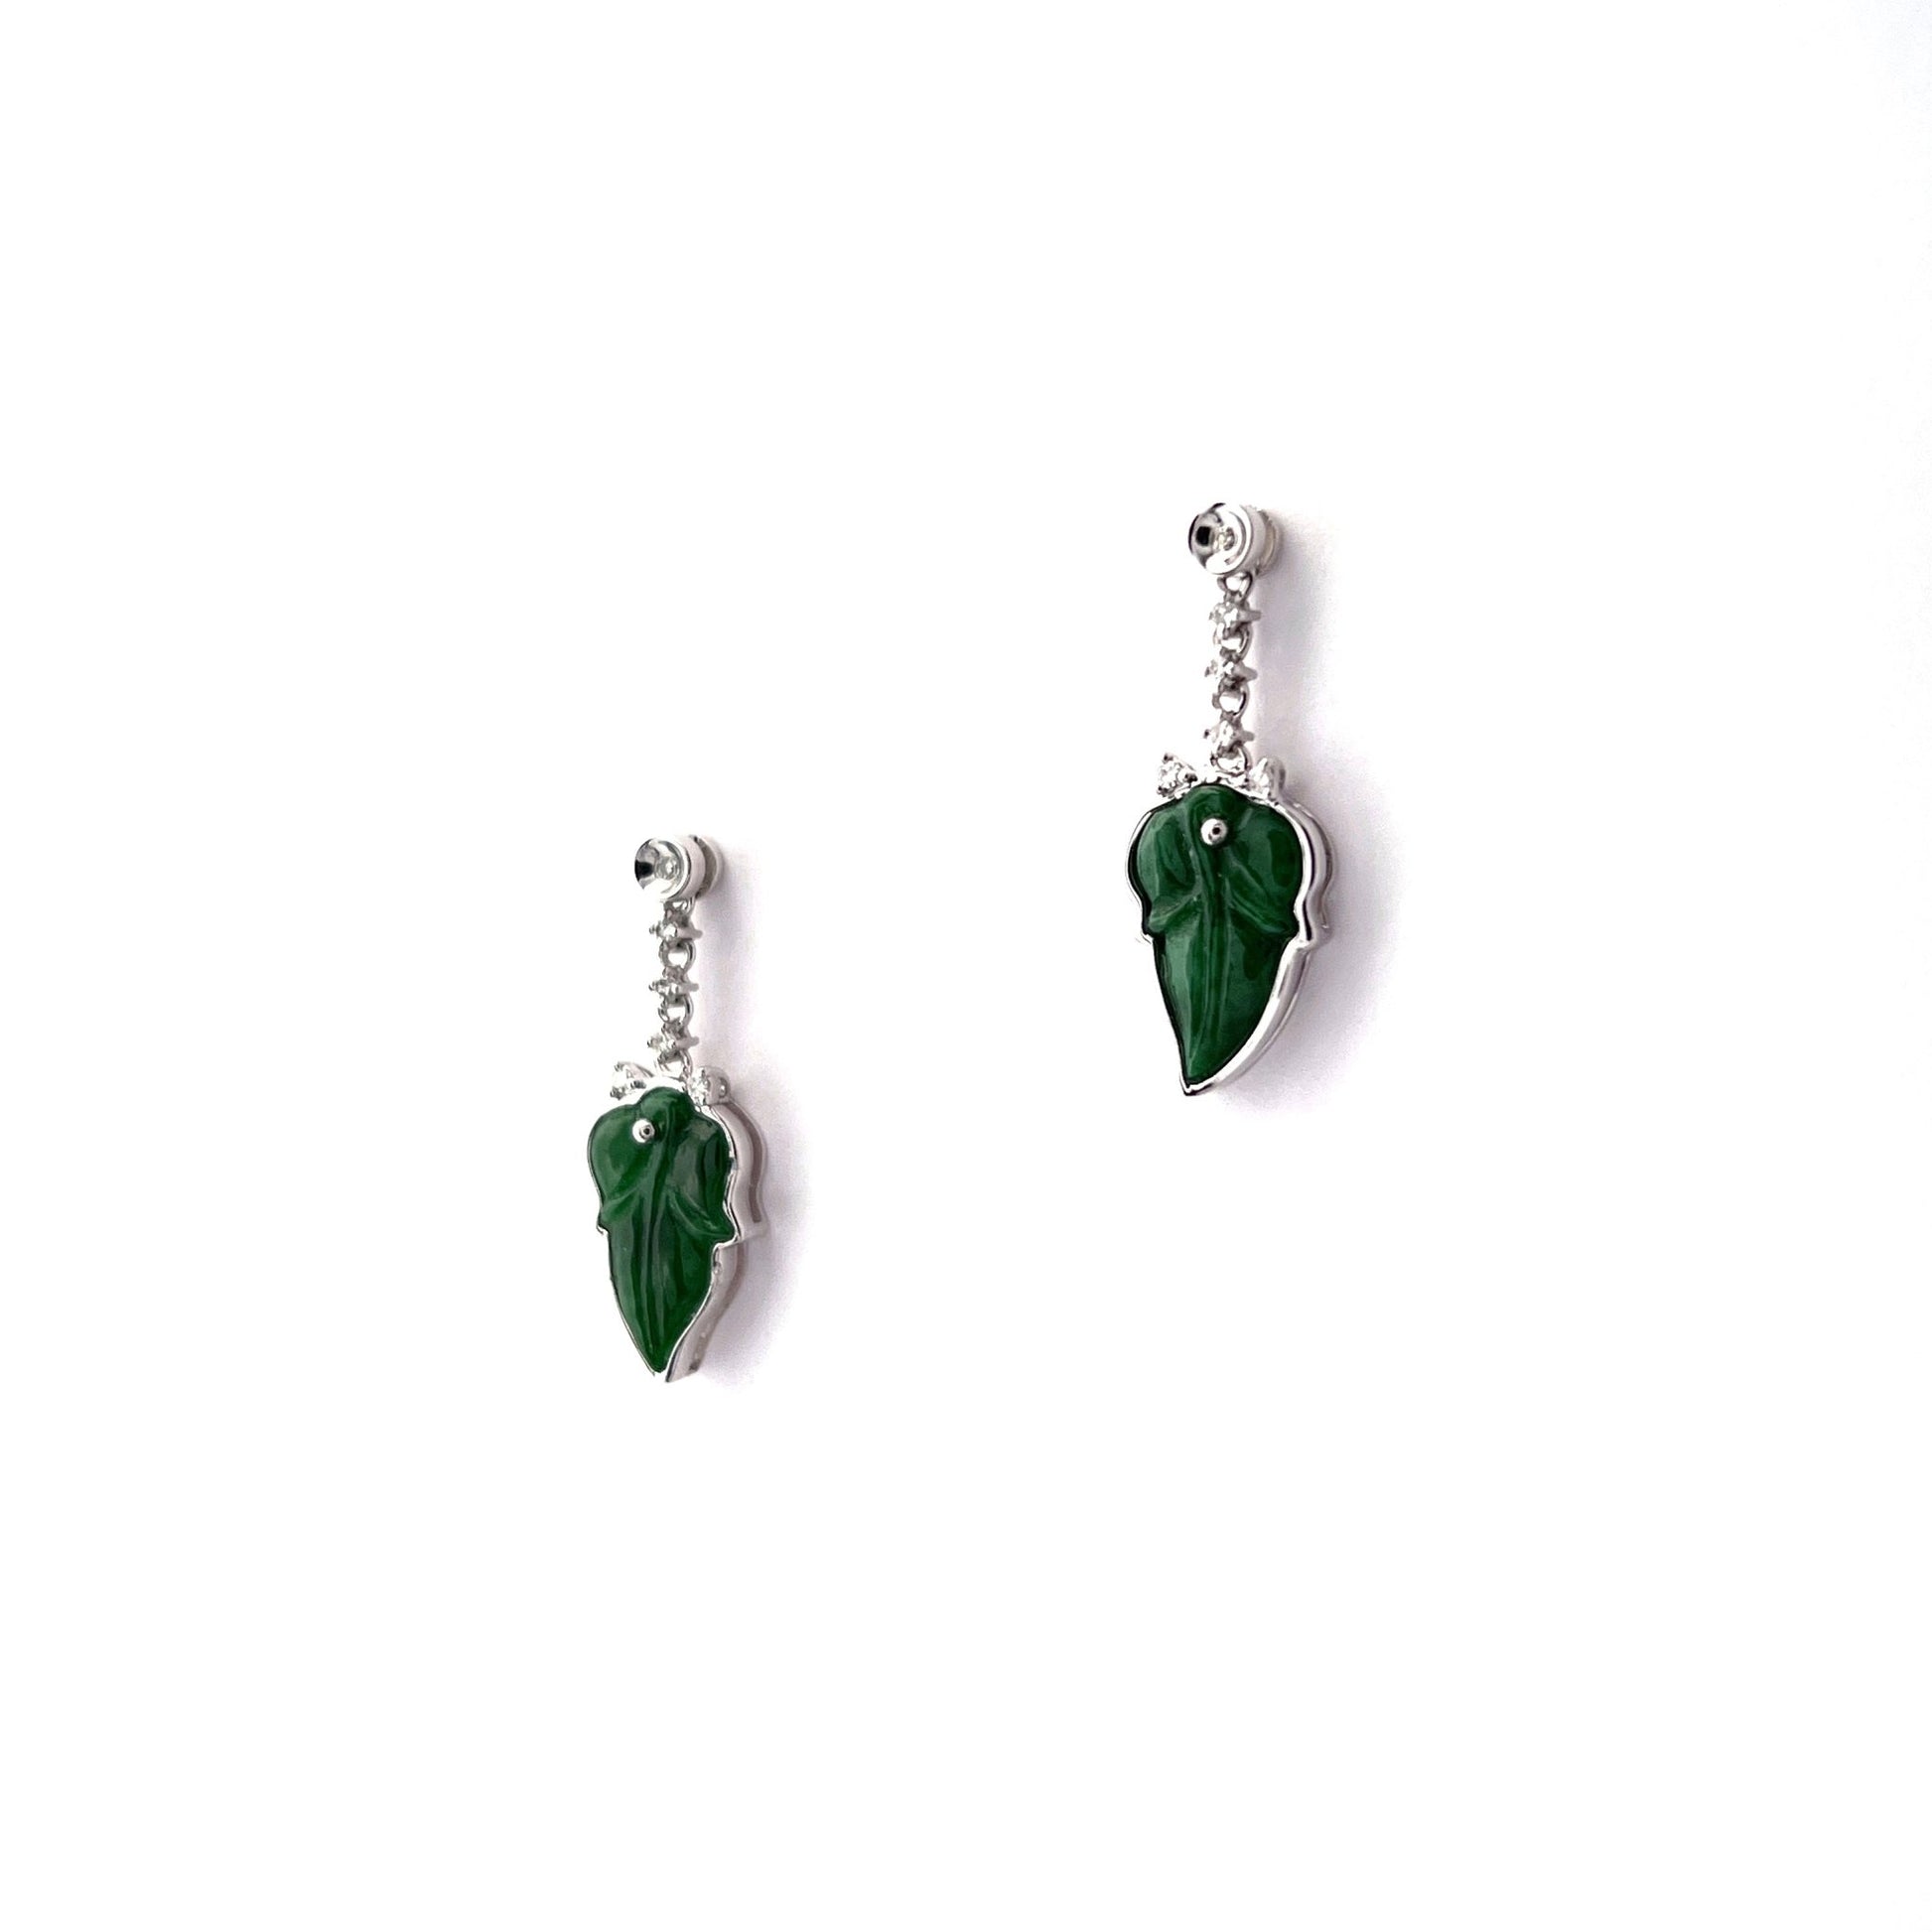 耳環 - 深綠色花青葉形雕刻天然翡翠配鑽石18K白色金耳環 - 雅玉珠寶